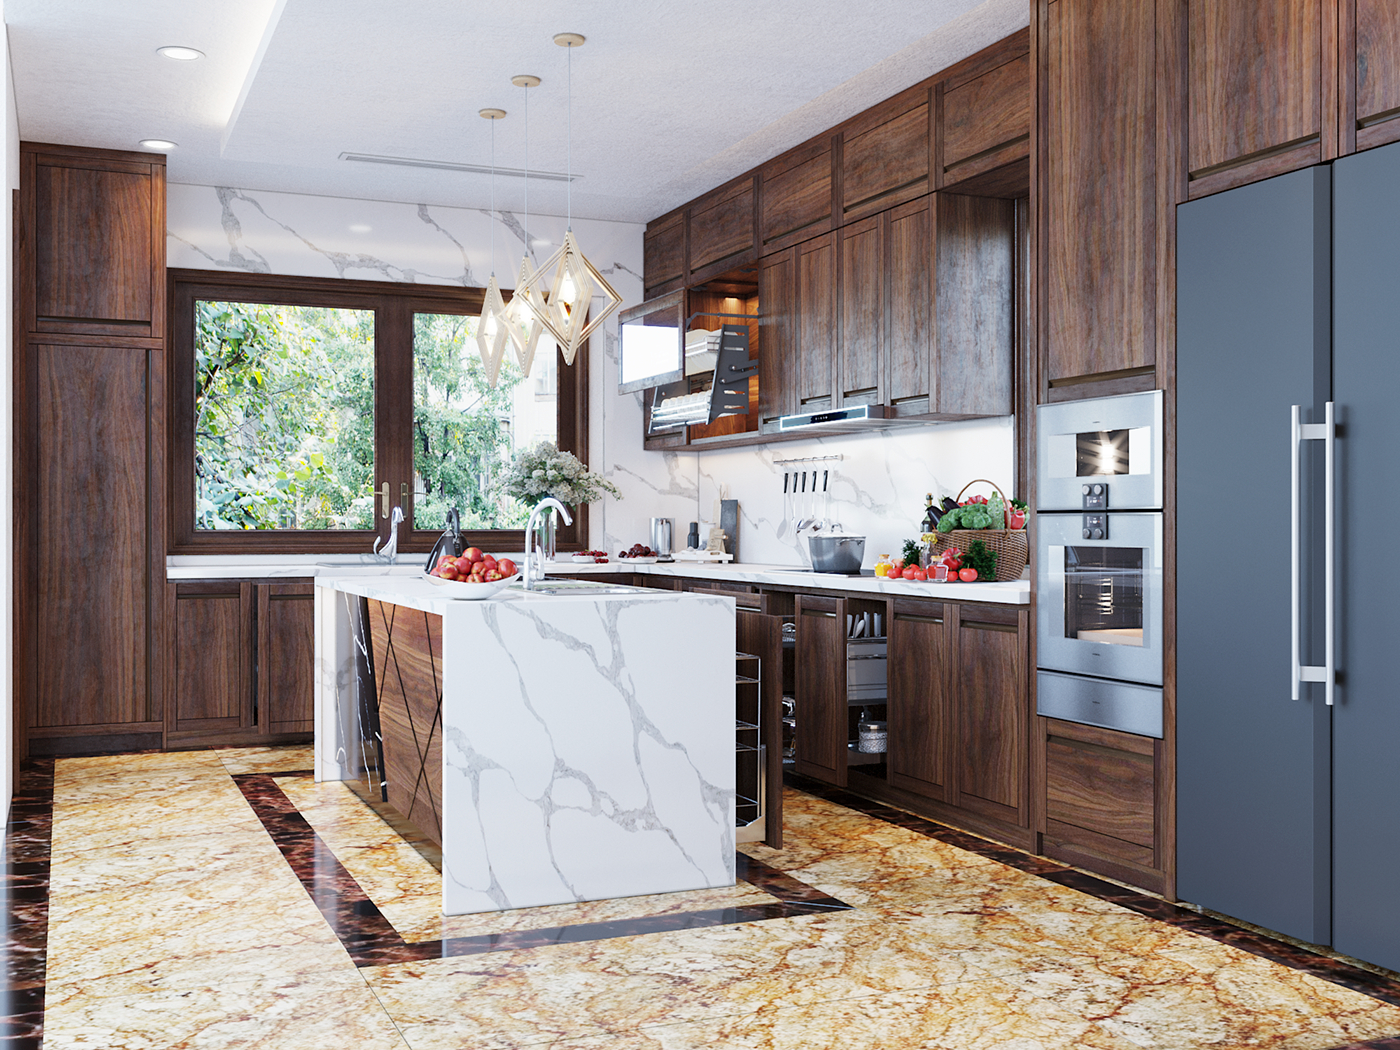 Hình ảnh phòng bếp với hệ tủ gỗ cao kịch trần, đảo bếp ốp đá cẩm thạch, sàn lát gạch màu vàng